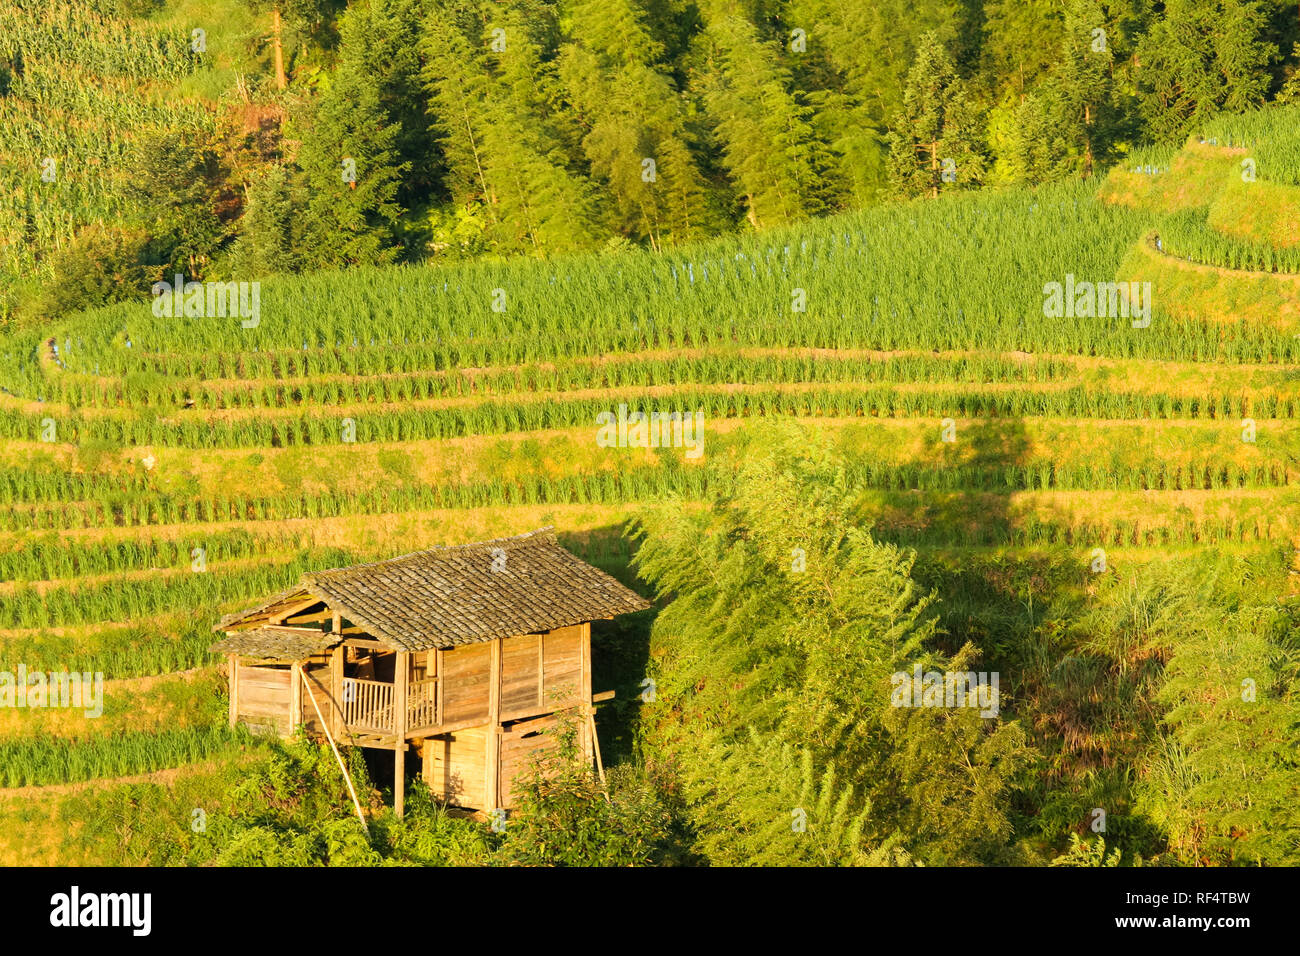 Longsheng terrazze di riso paesaggio in Cina Foto Stock